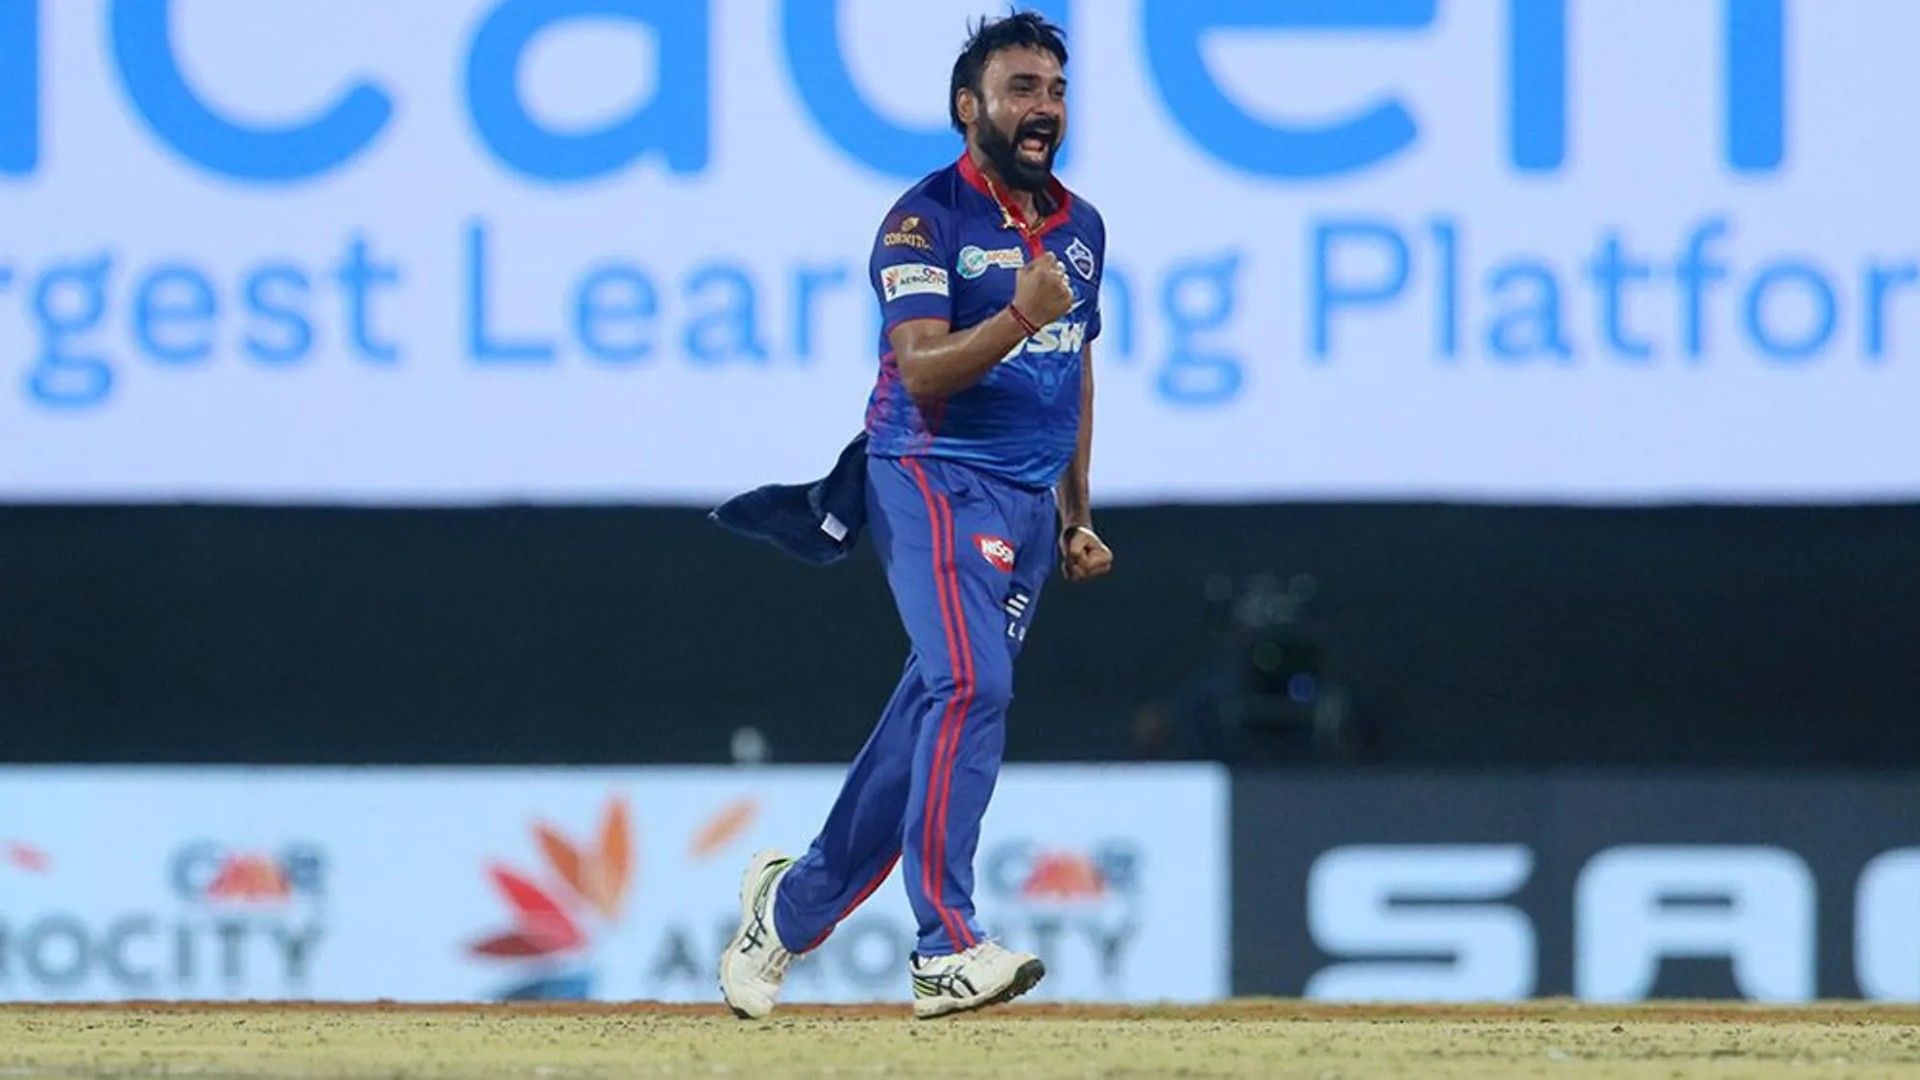 IPL 2021 Amit Mishra celebrates a wicket. (Image: IPL/BCCI)